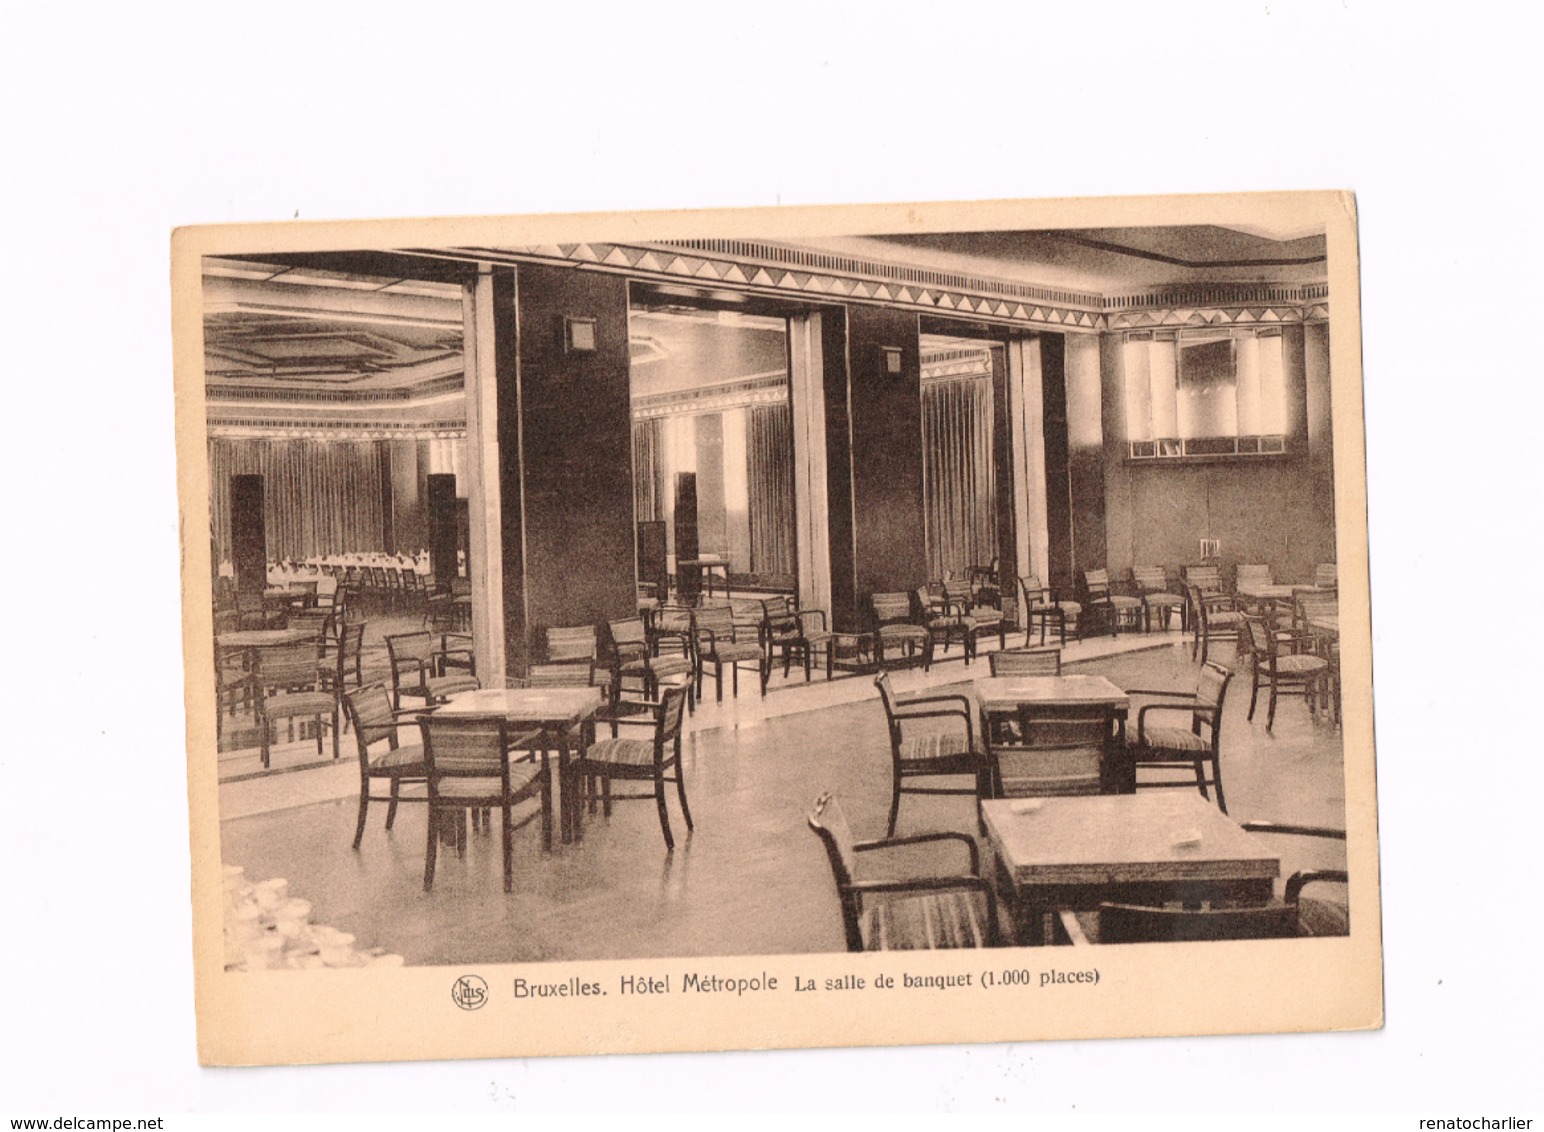 Hôtel Métropole.La Salle De Banquet. - Cafés, Hotels, Restaurants